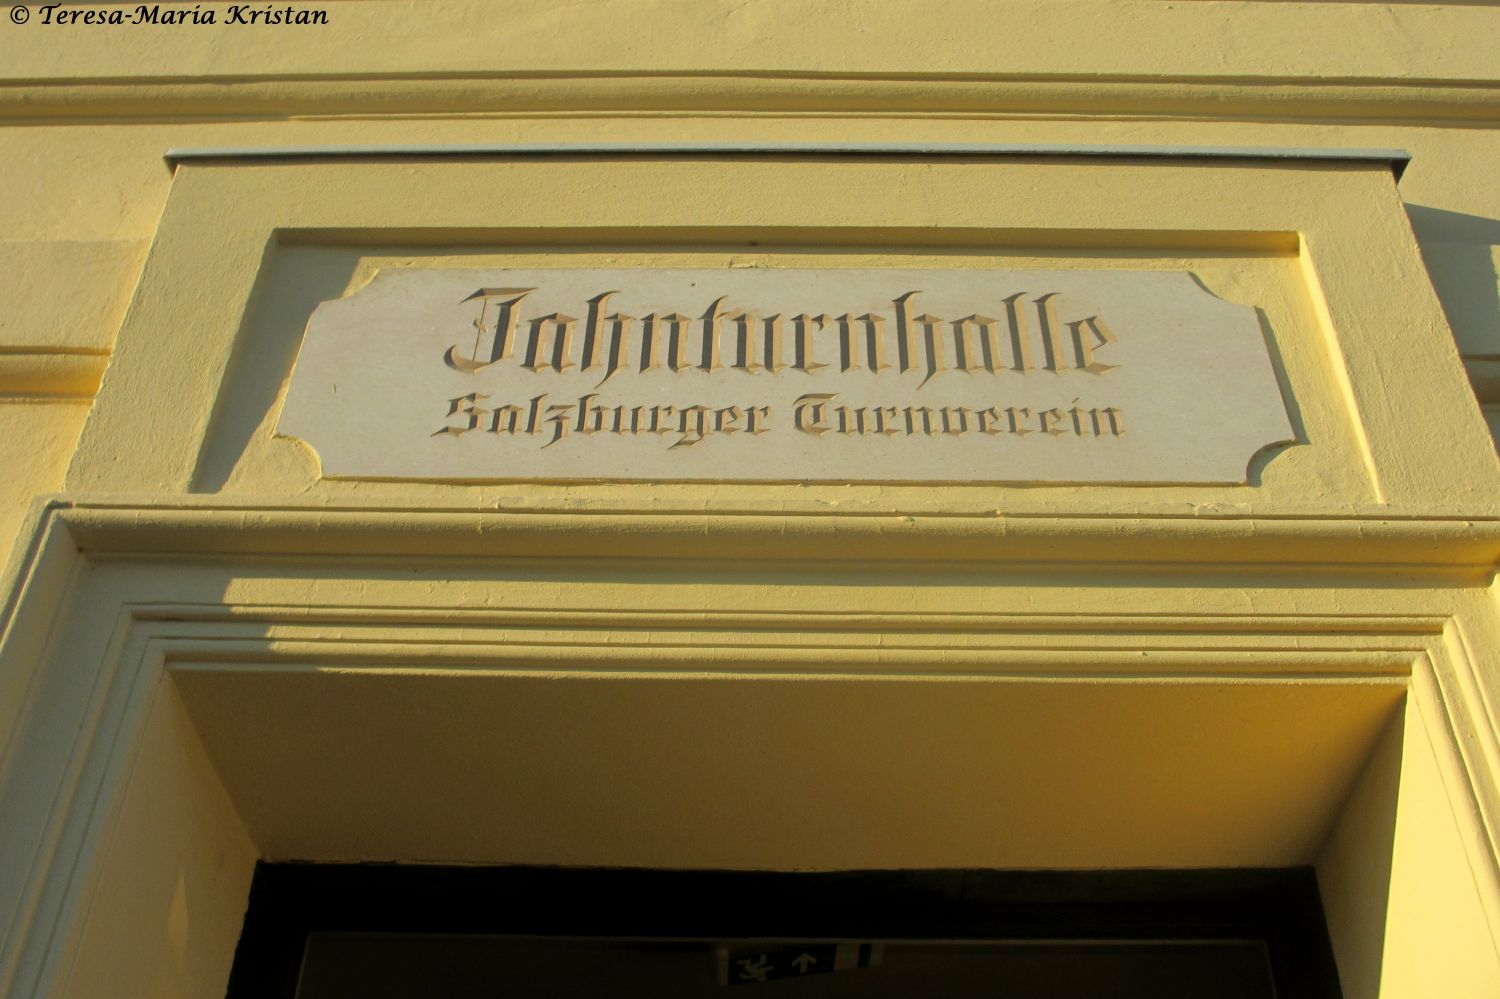 Salzburger Jahnturnhalle